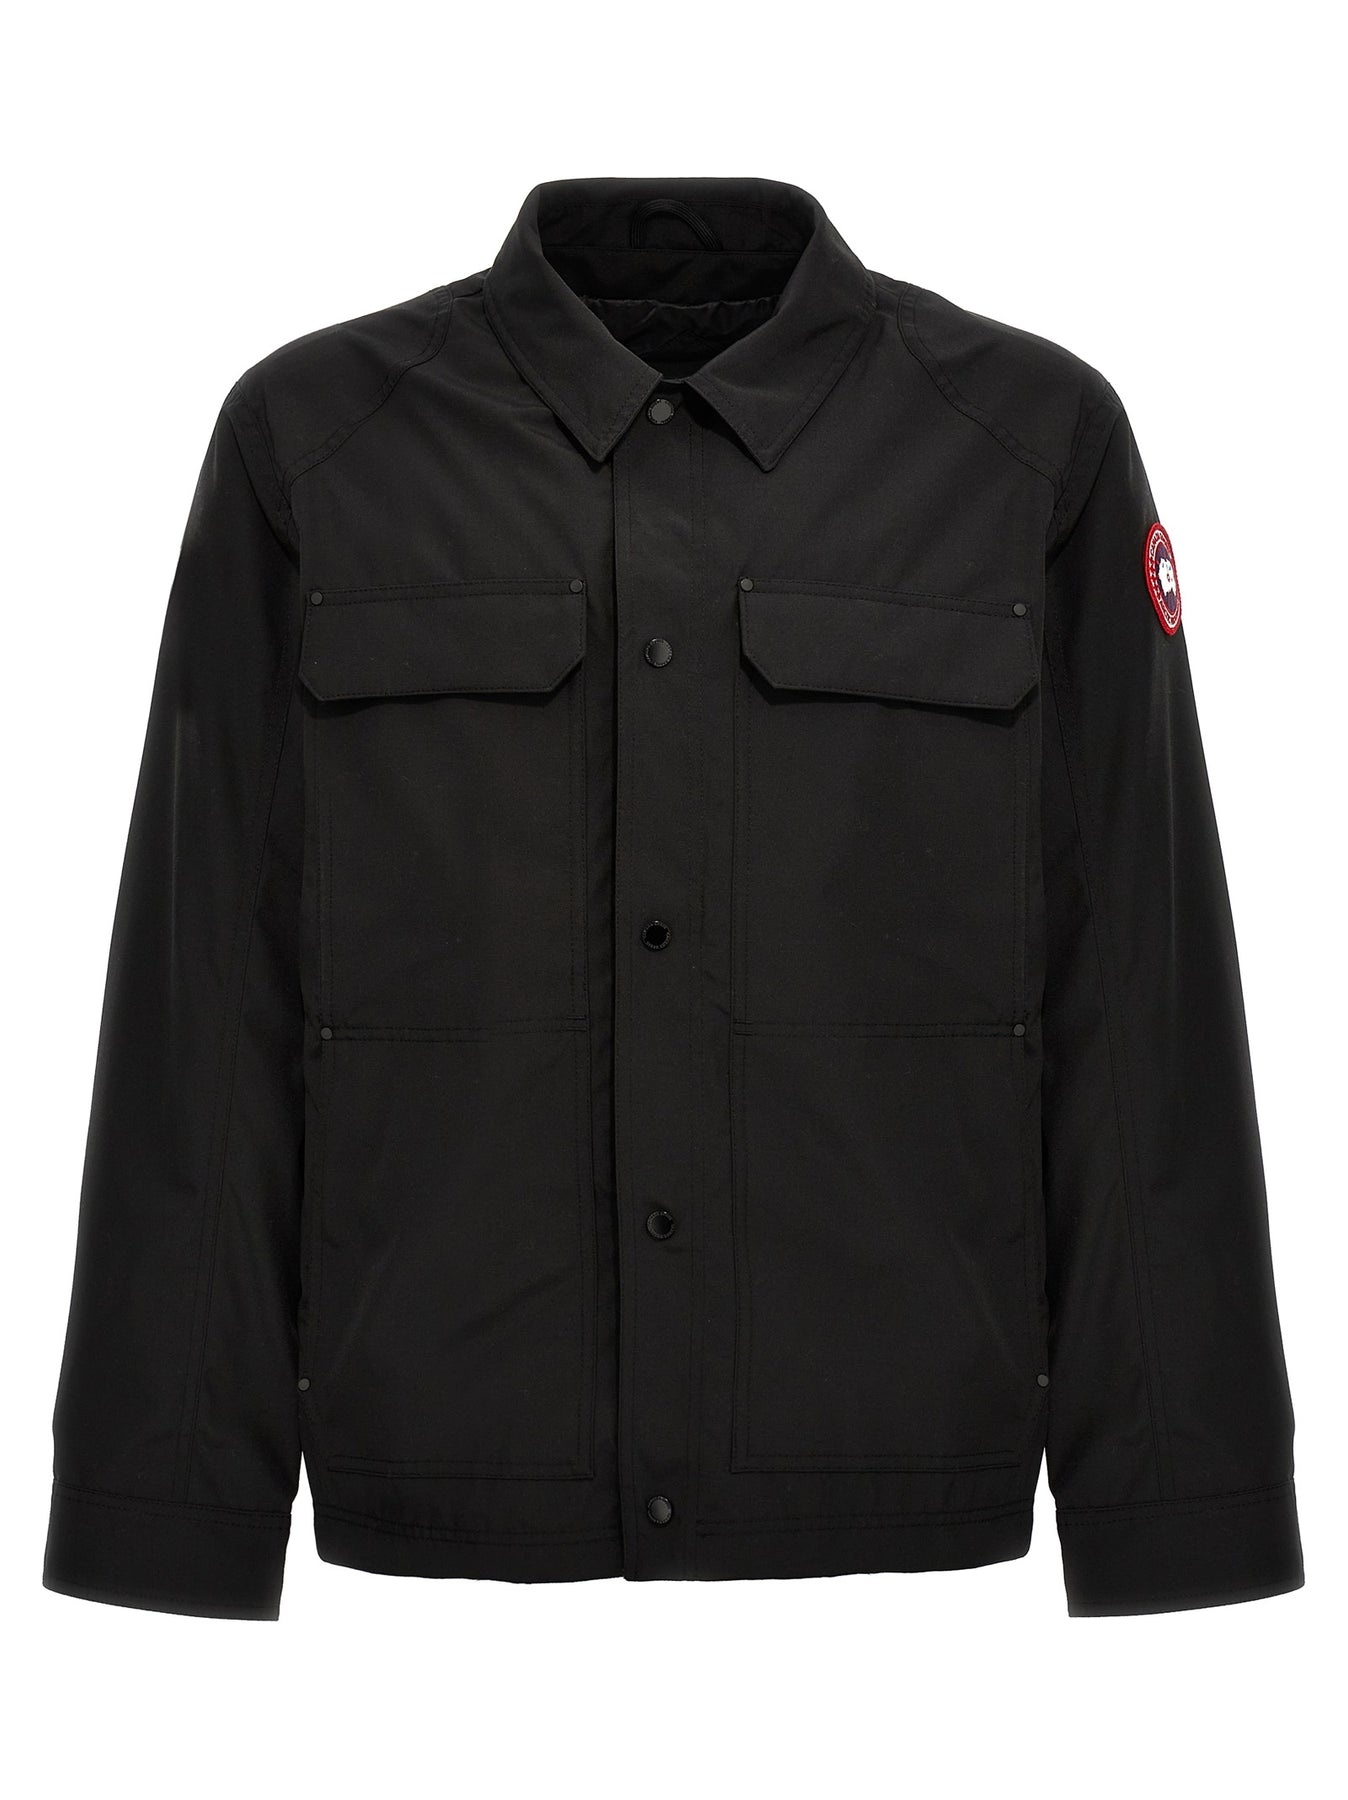 Burnaby Chore Casual Jackets, Parka Black - 1